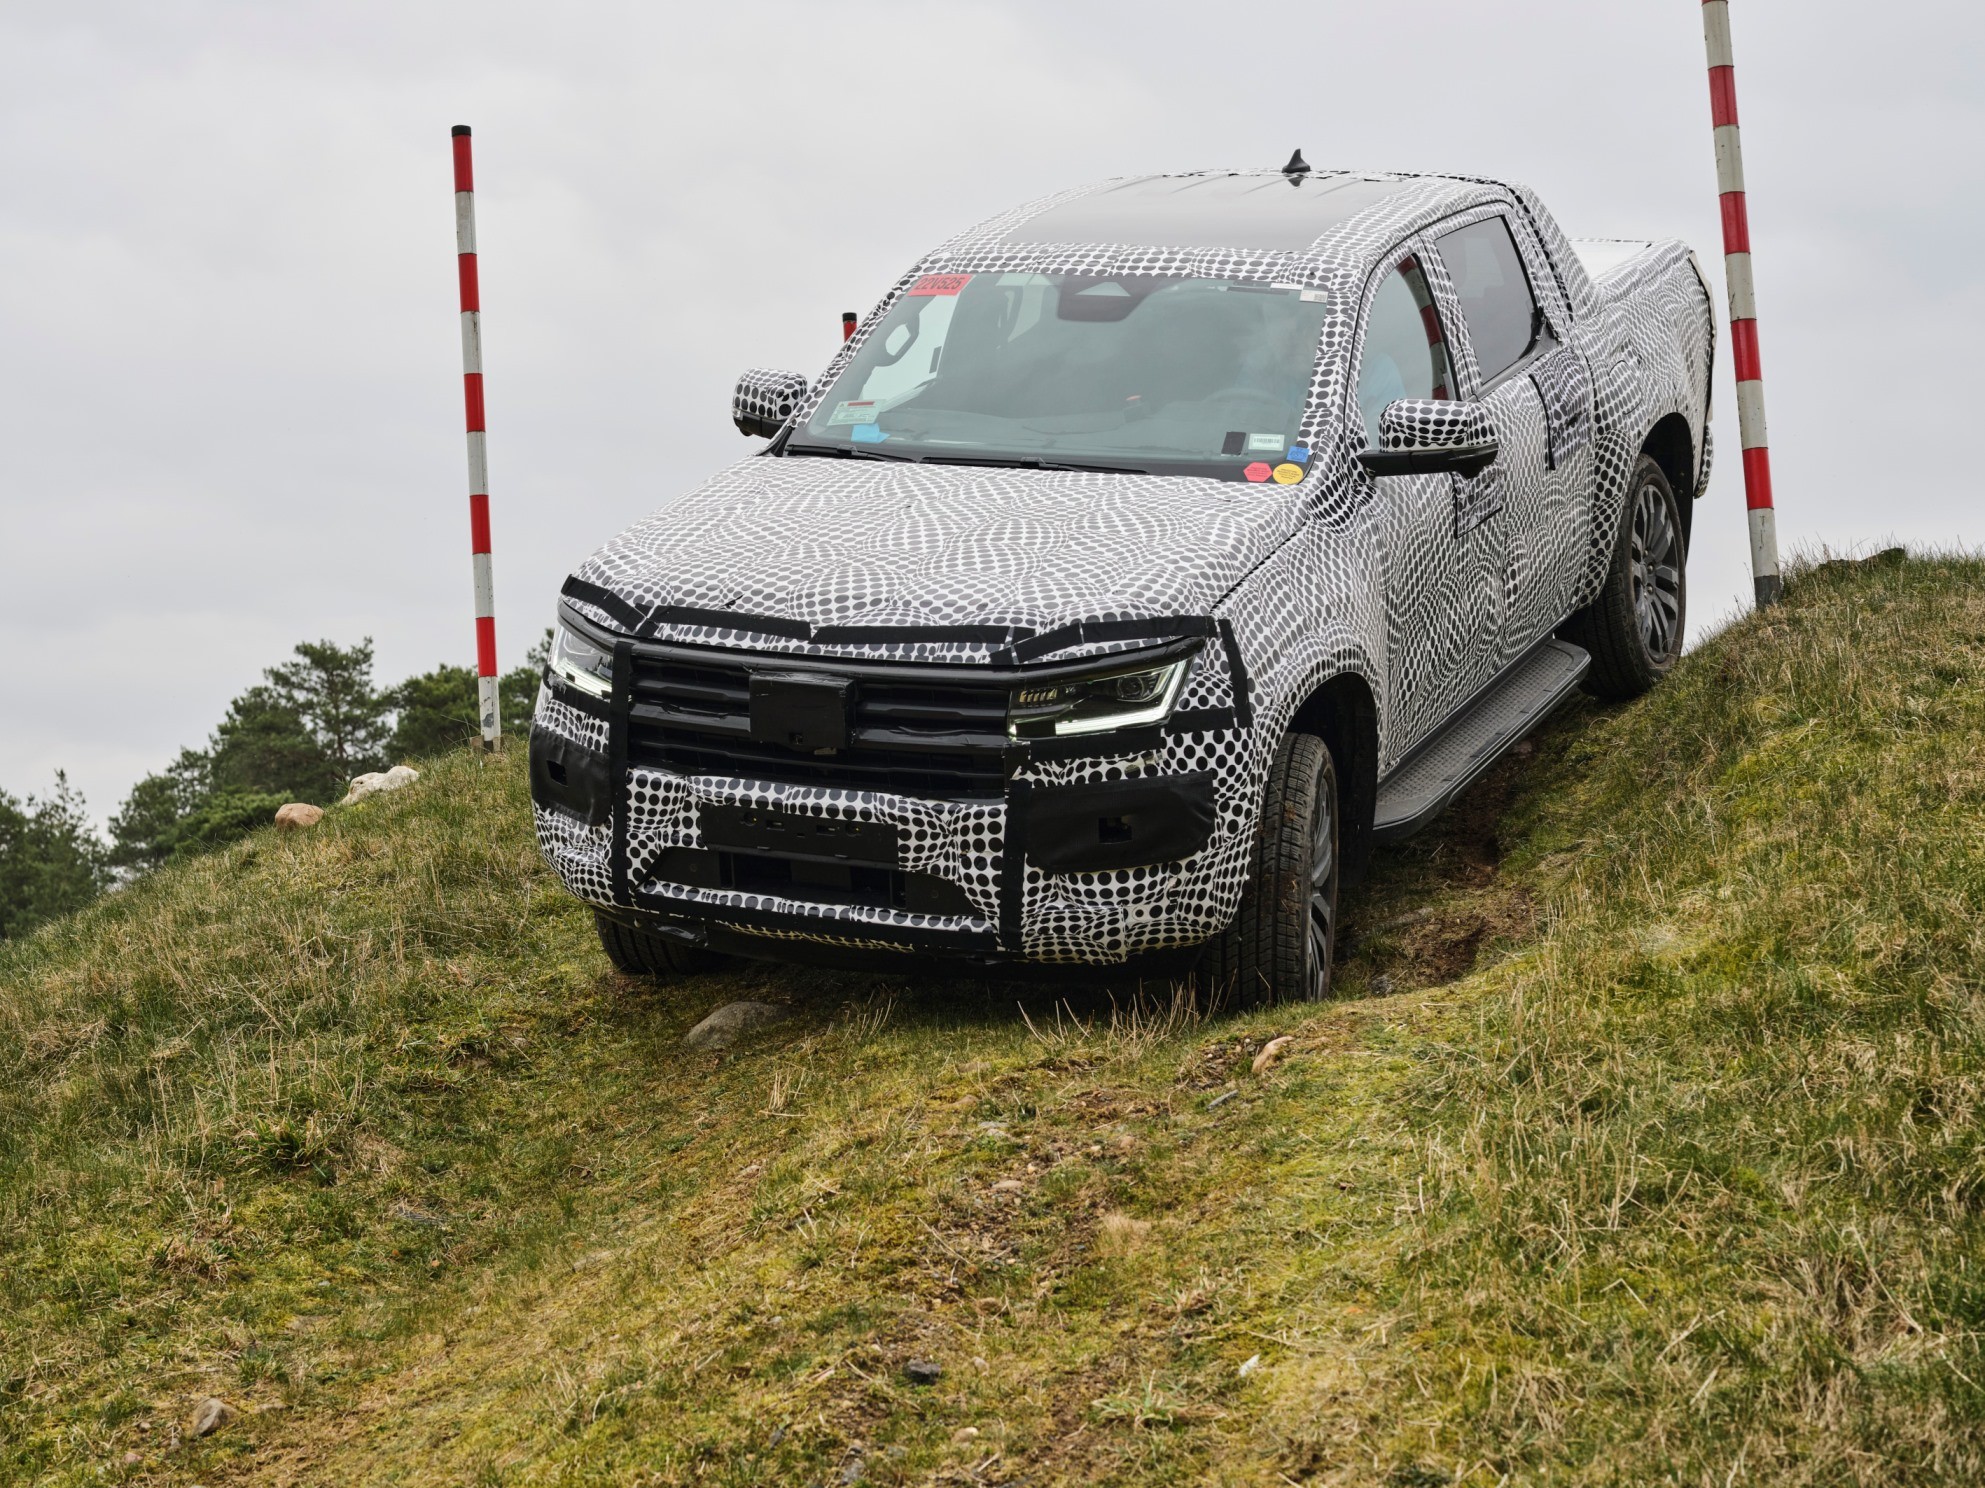 VW Amarok (Test 2023): Kehrt der Pick-up als Ranger-Zwilling